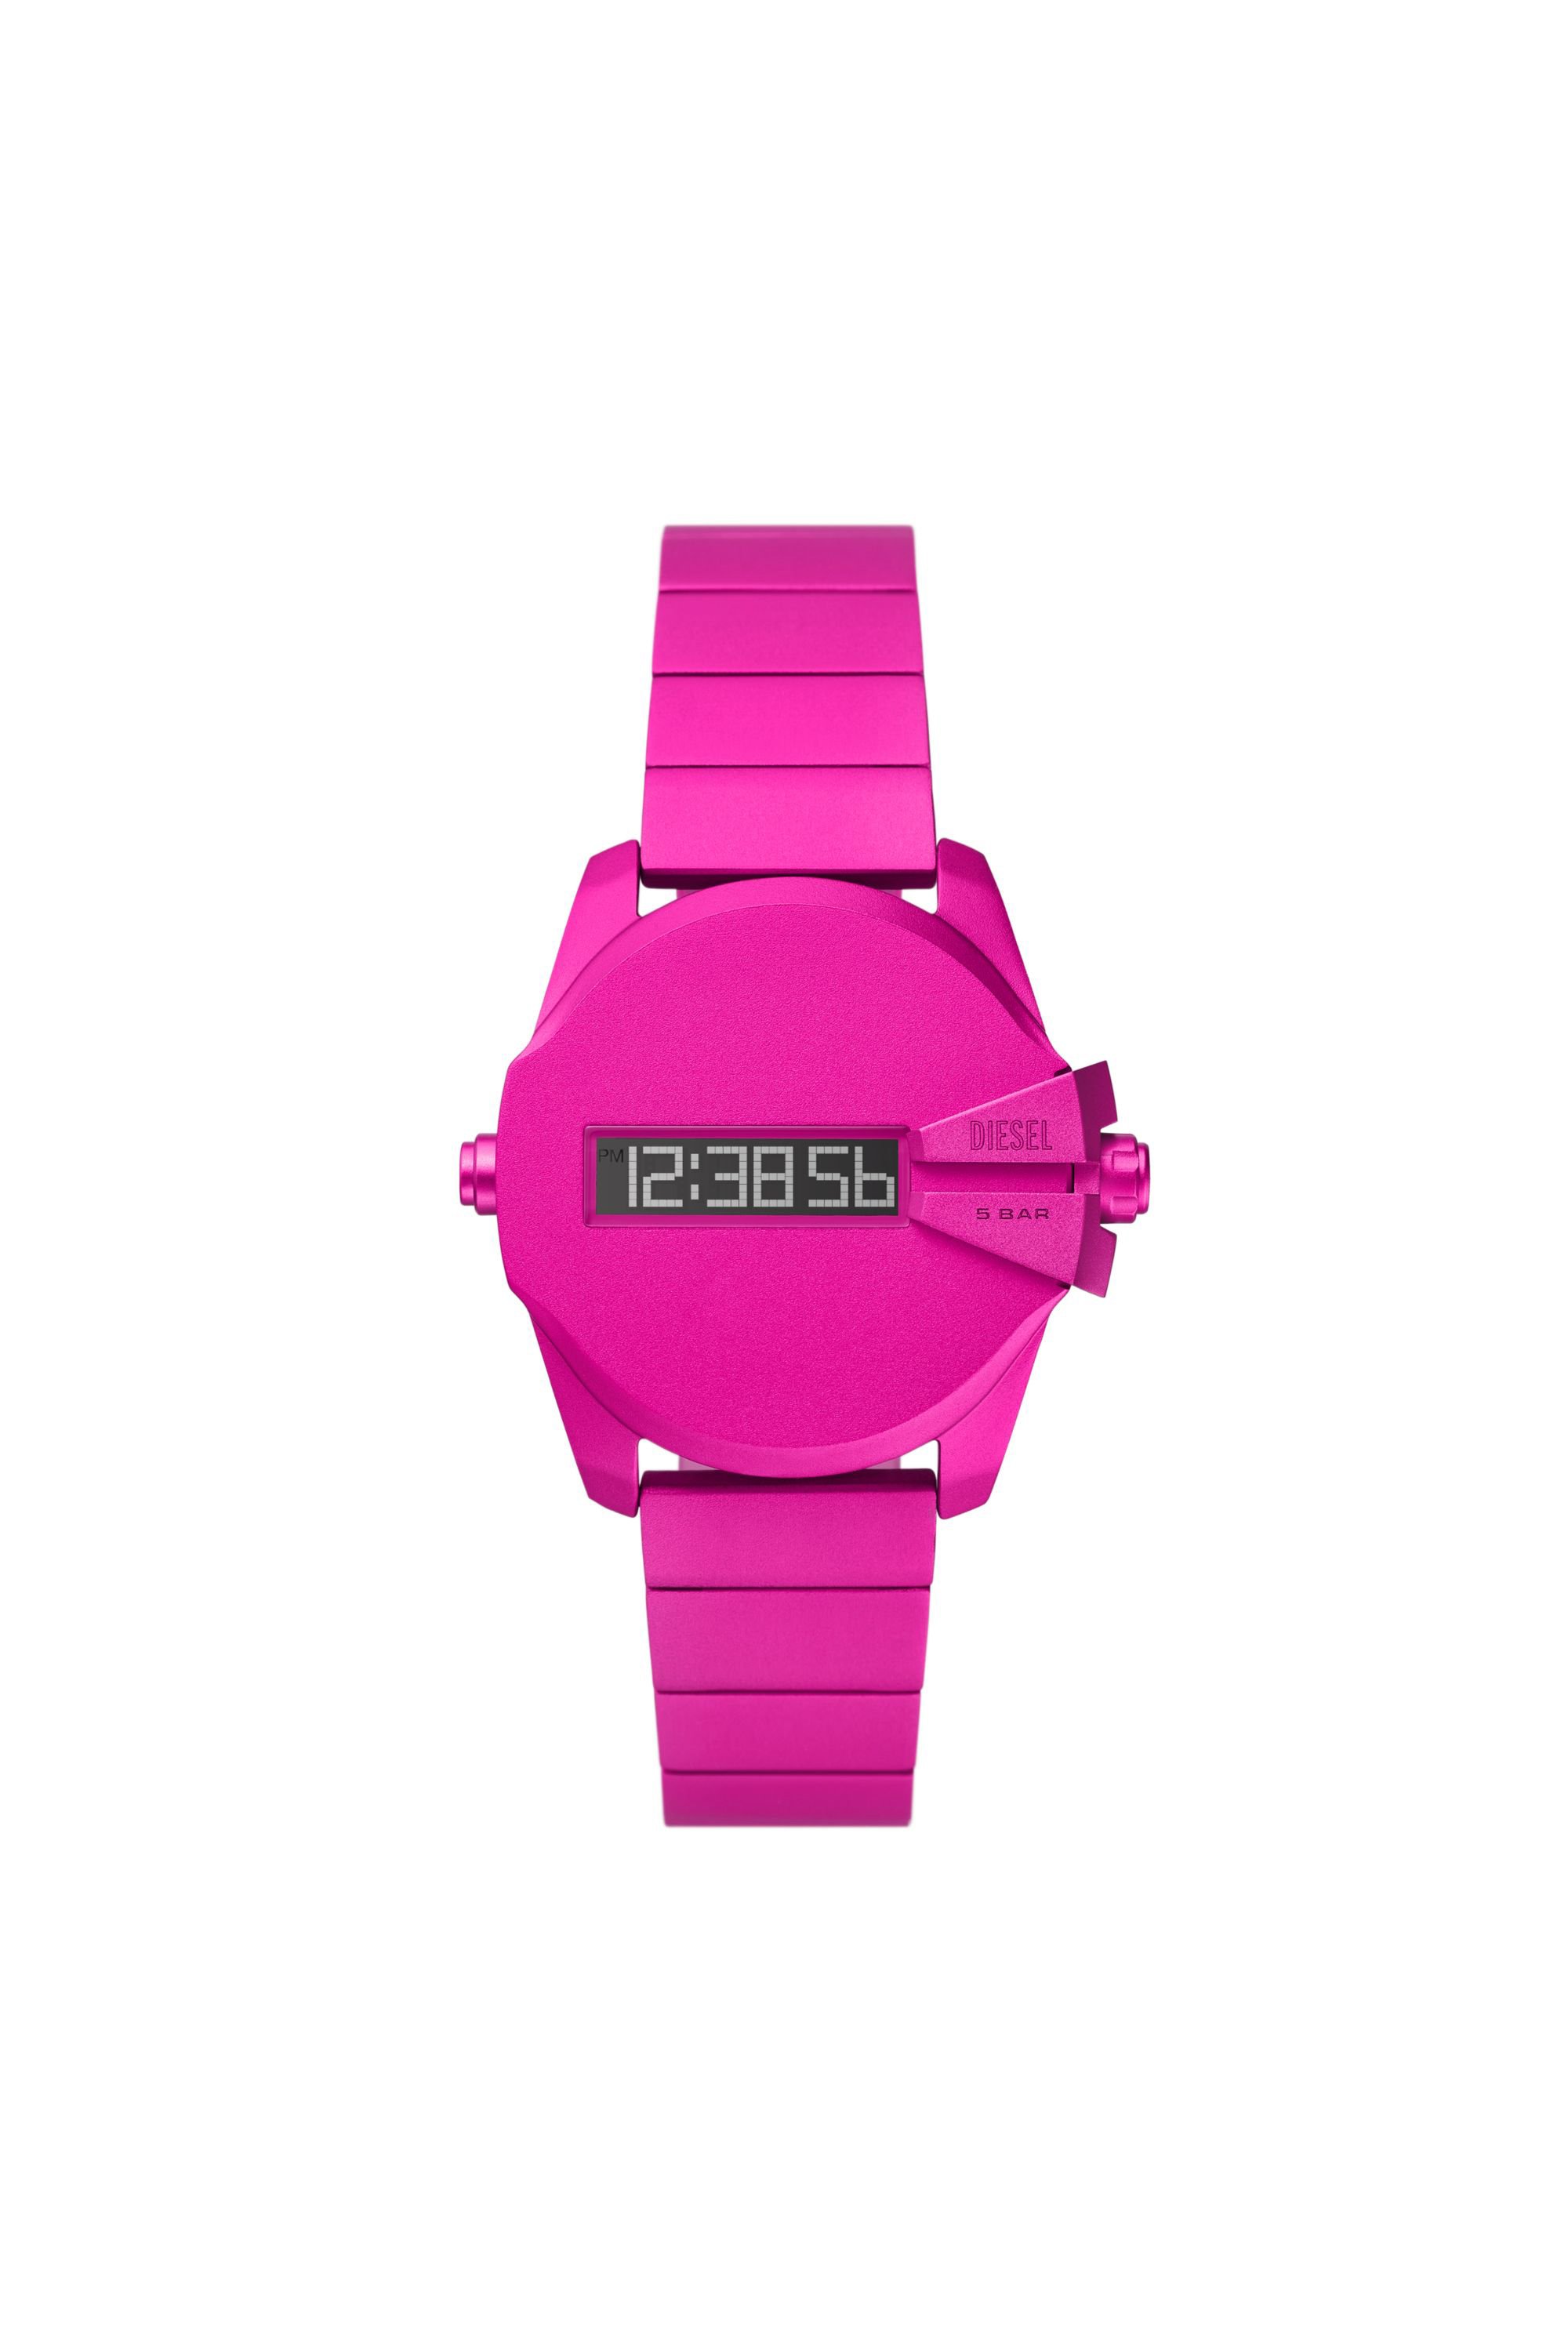 Diesel - DZ2206 WATCH, Man Baby chief digital pink aluminum watch in Pink - Image 1